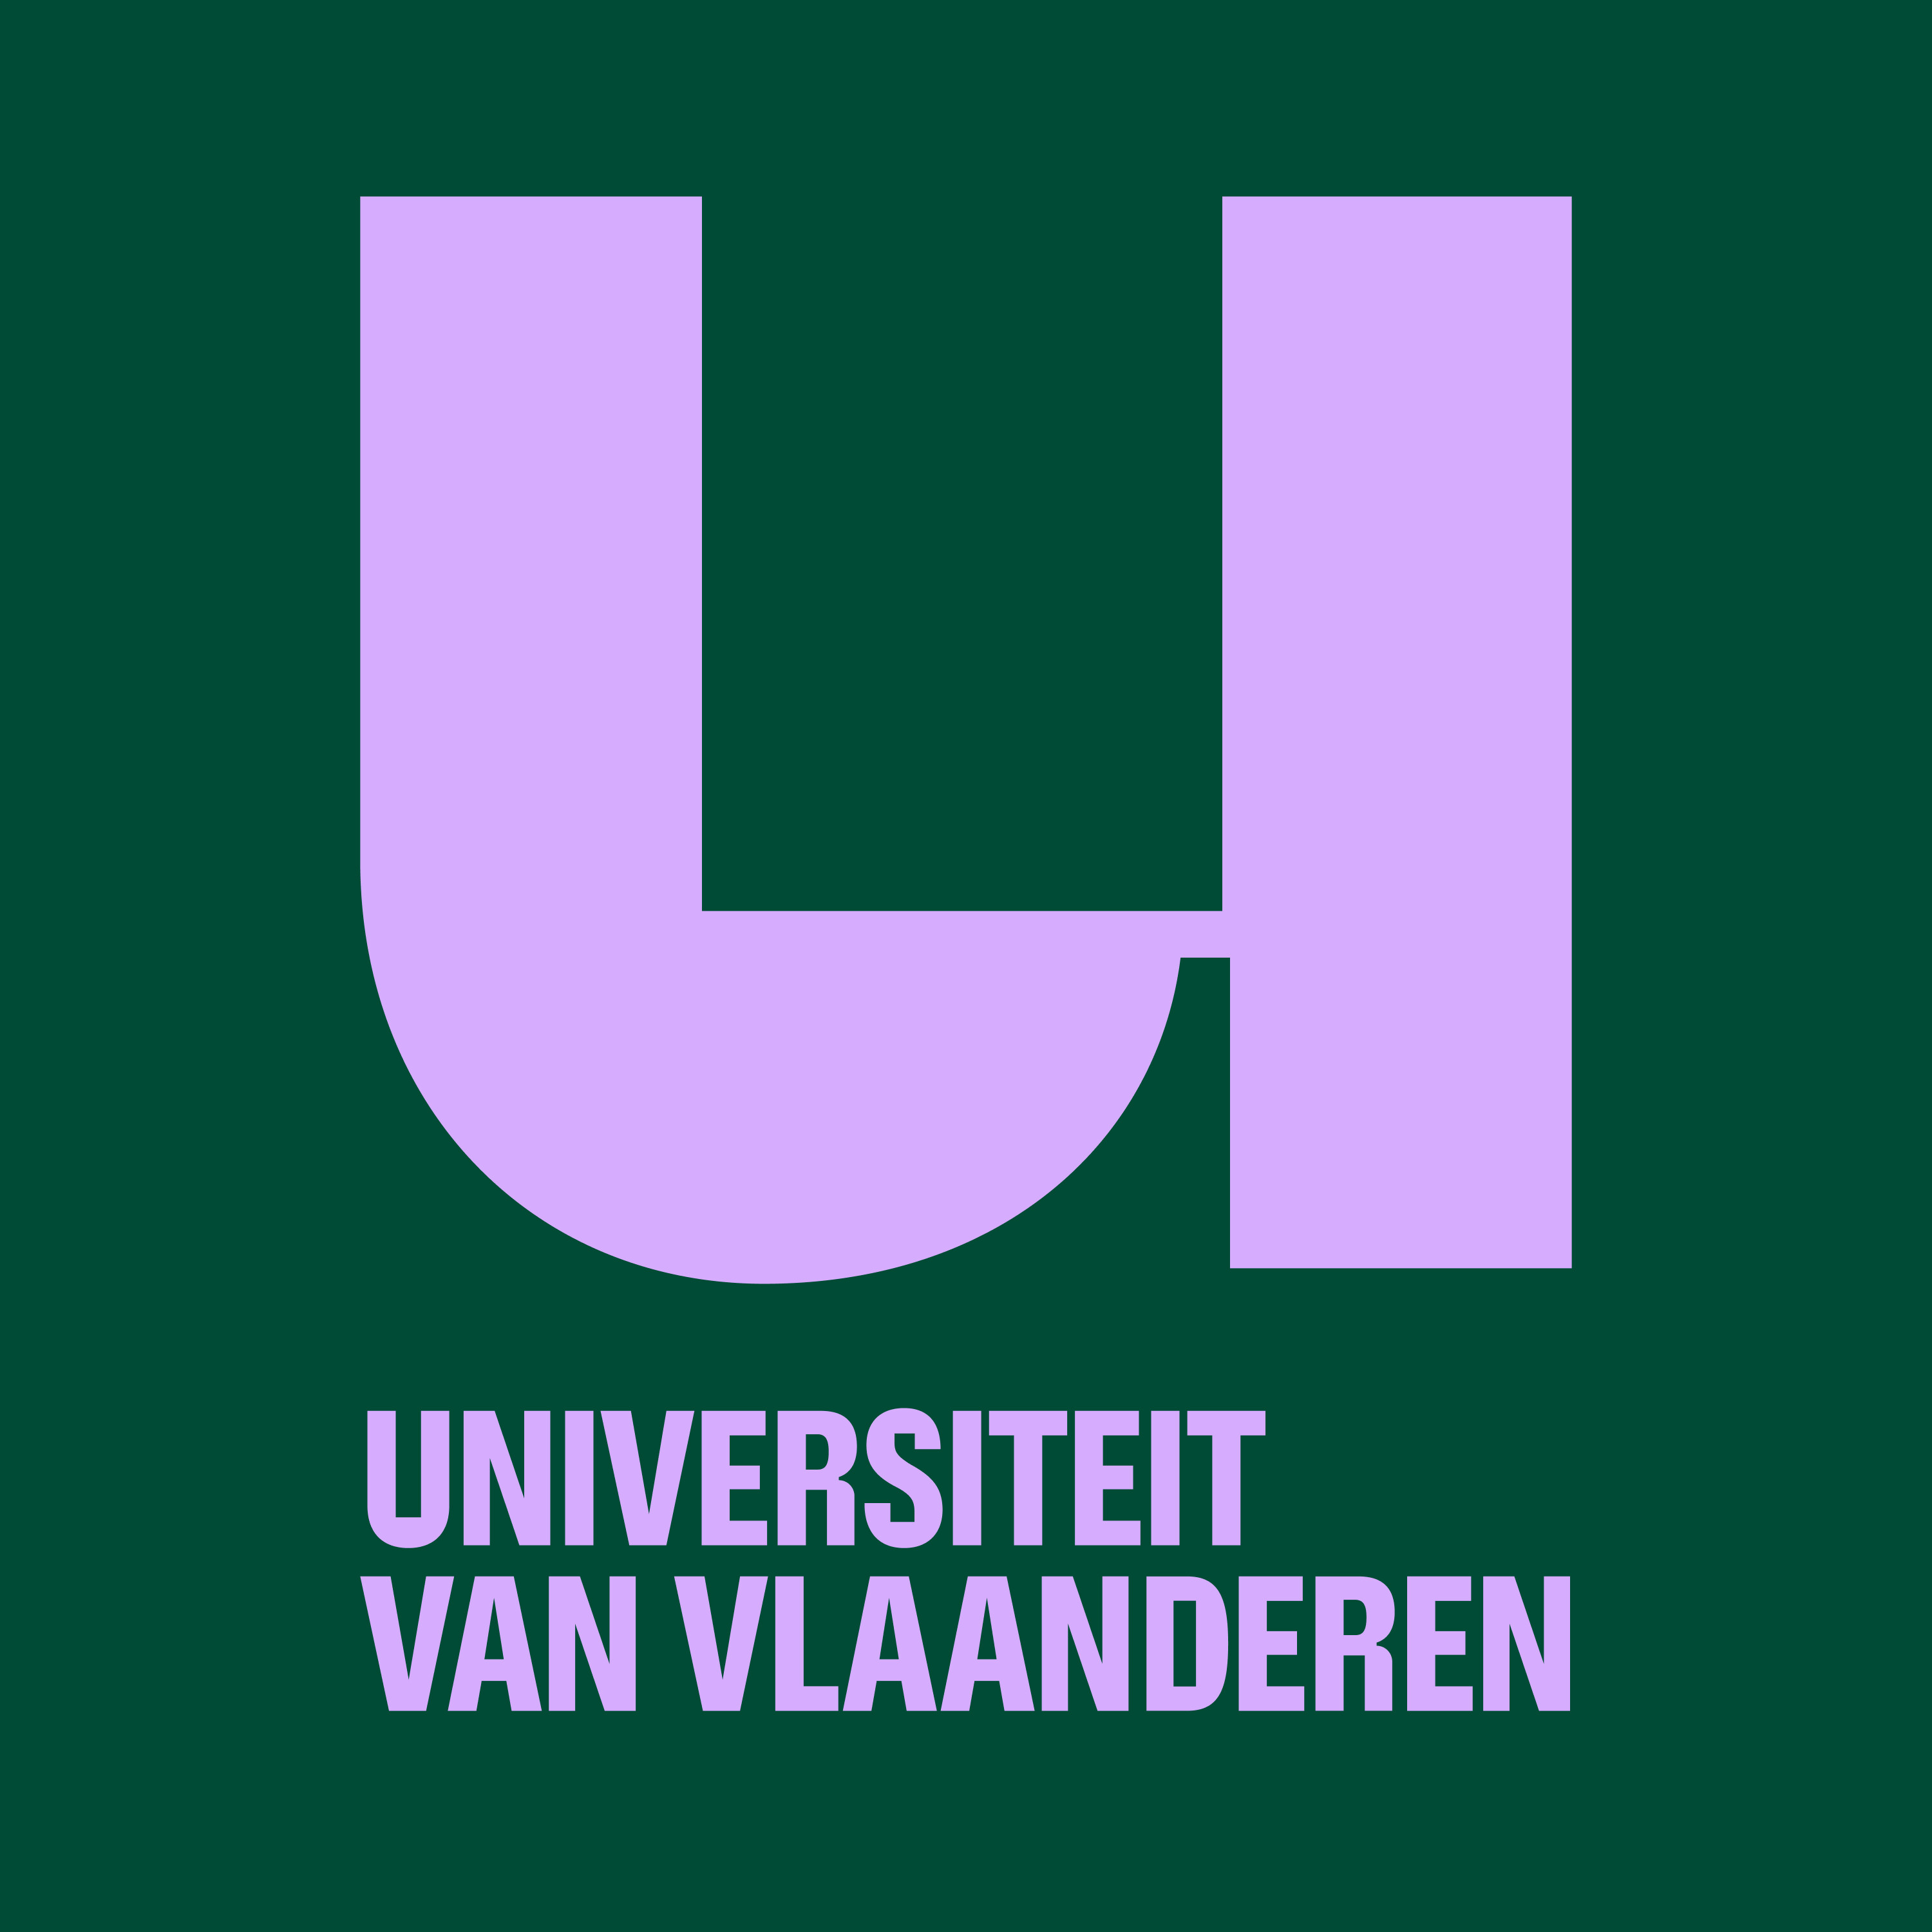 De Universiteit van Vlaanderen Podcast logo